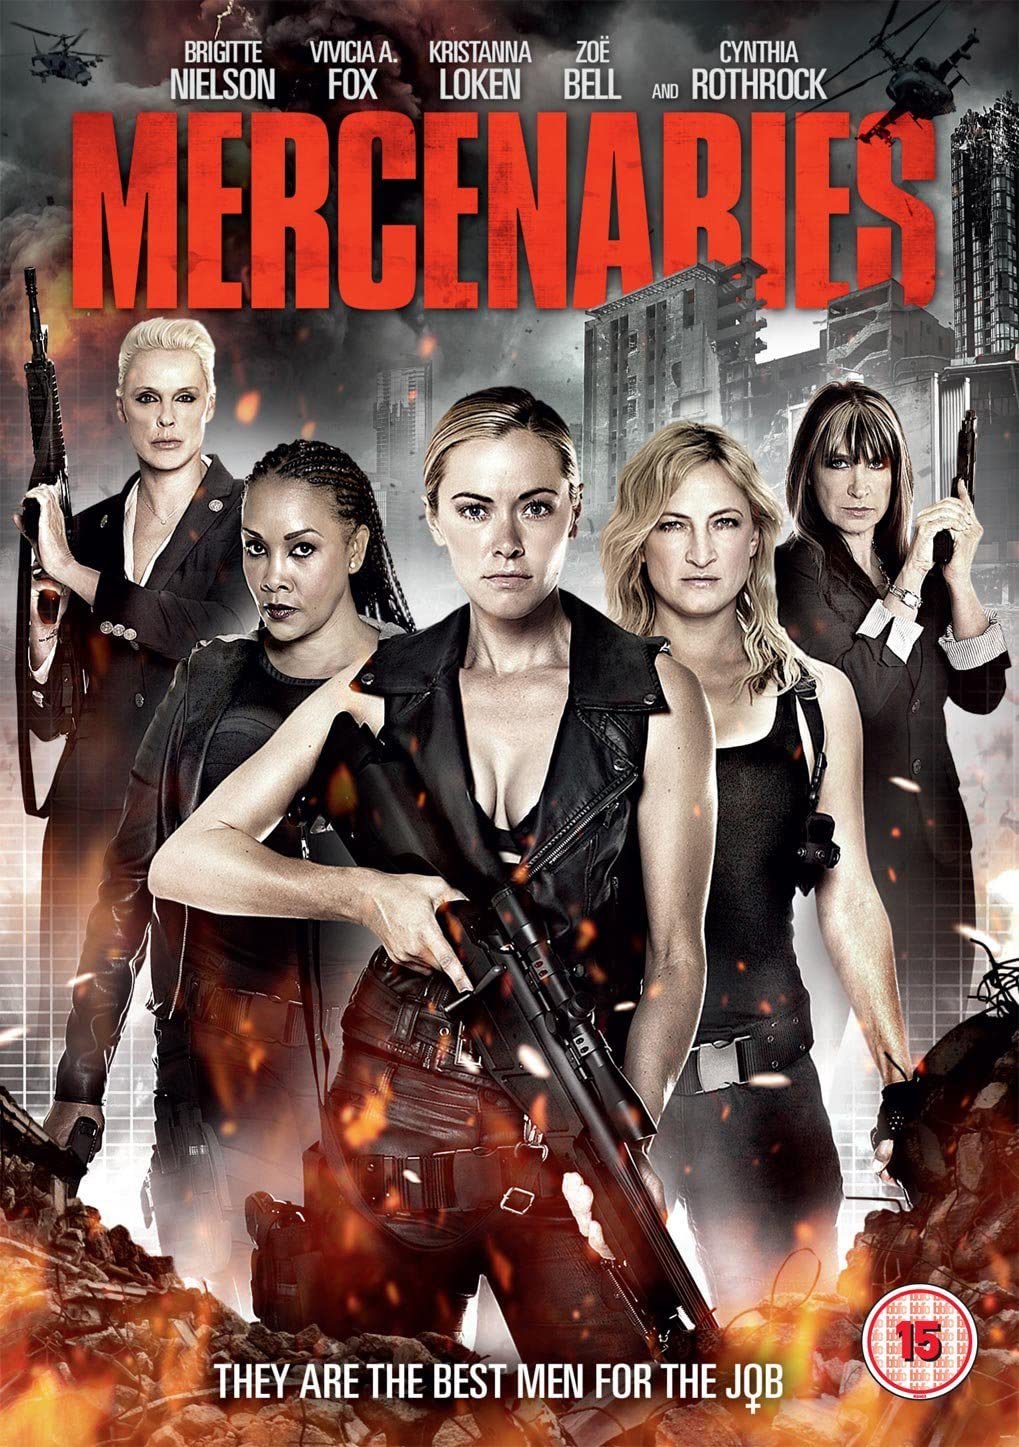 Mercenaries - Action/Adventure [DVD]